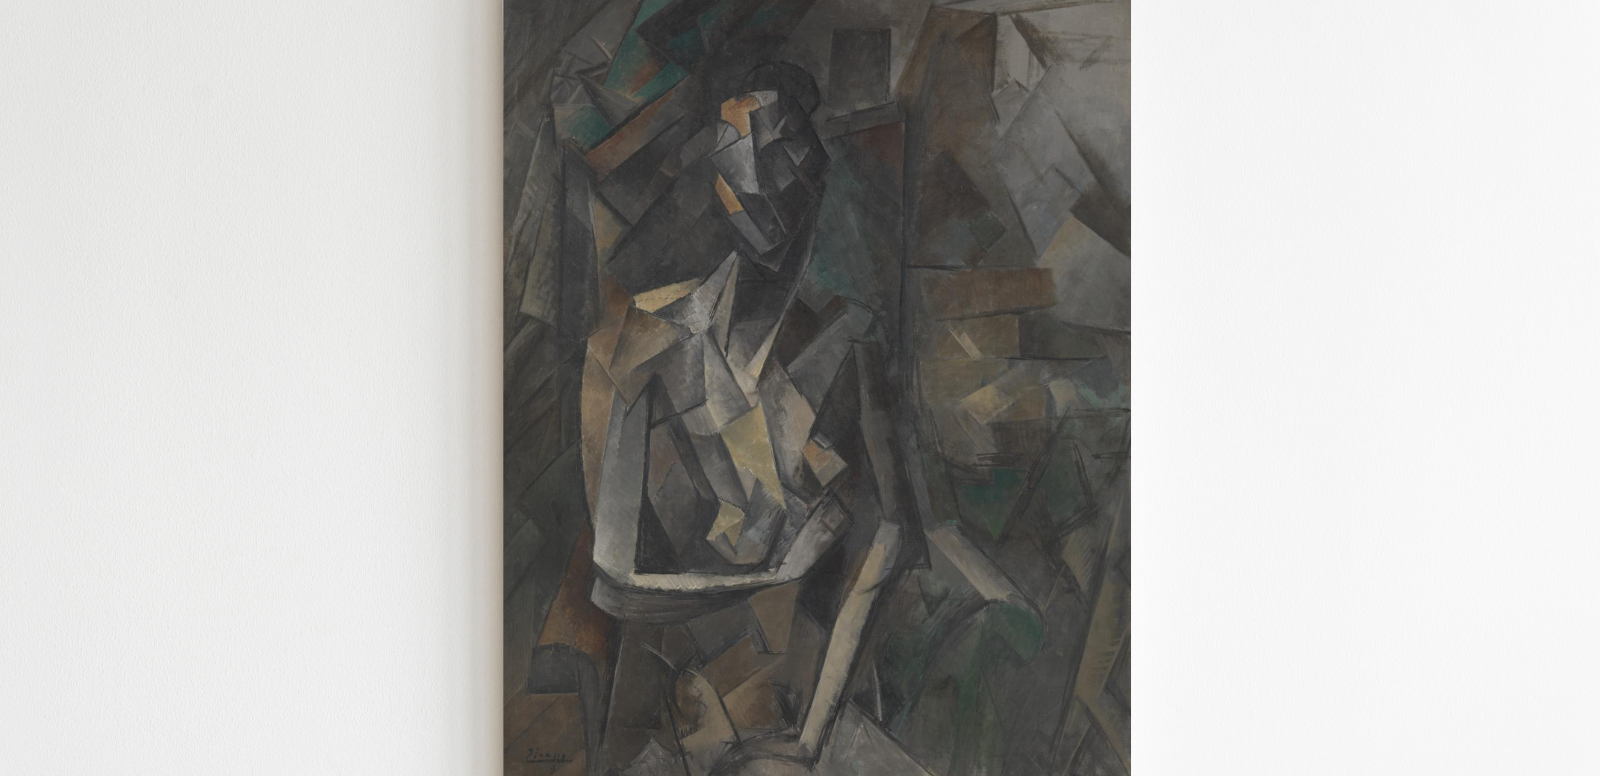 Pablo Picasso, "Mujer sentada", 1910, 